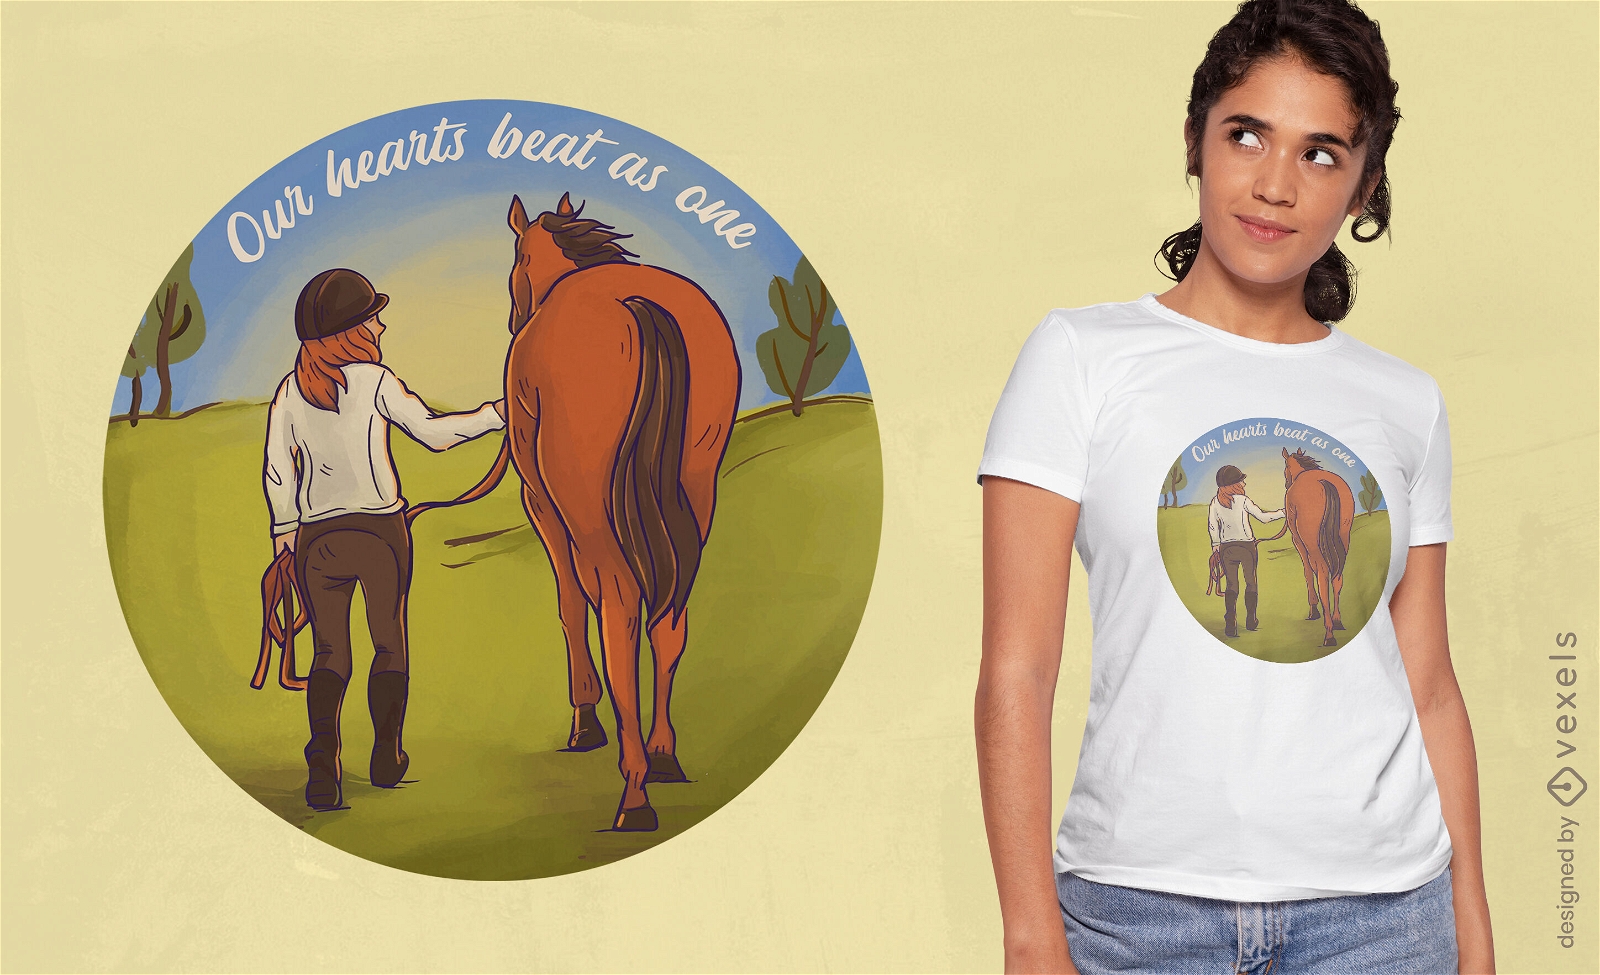 Dise?o de camiseta con cita de ni?a y caballo.